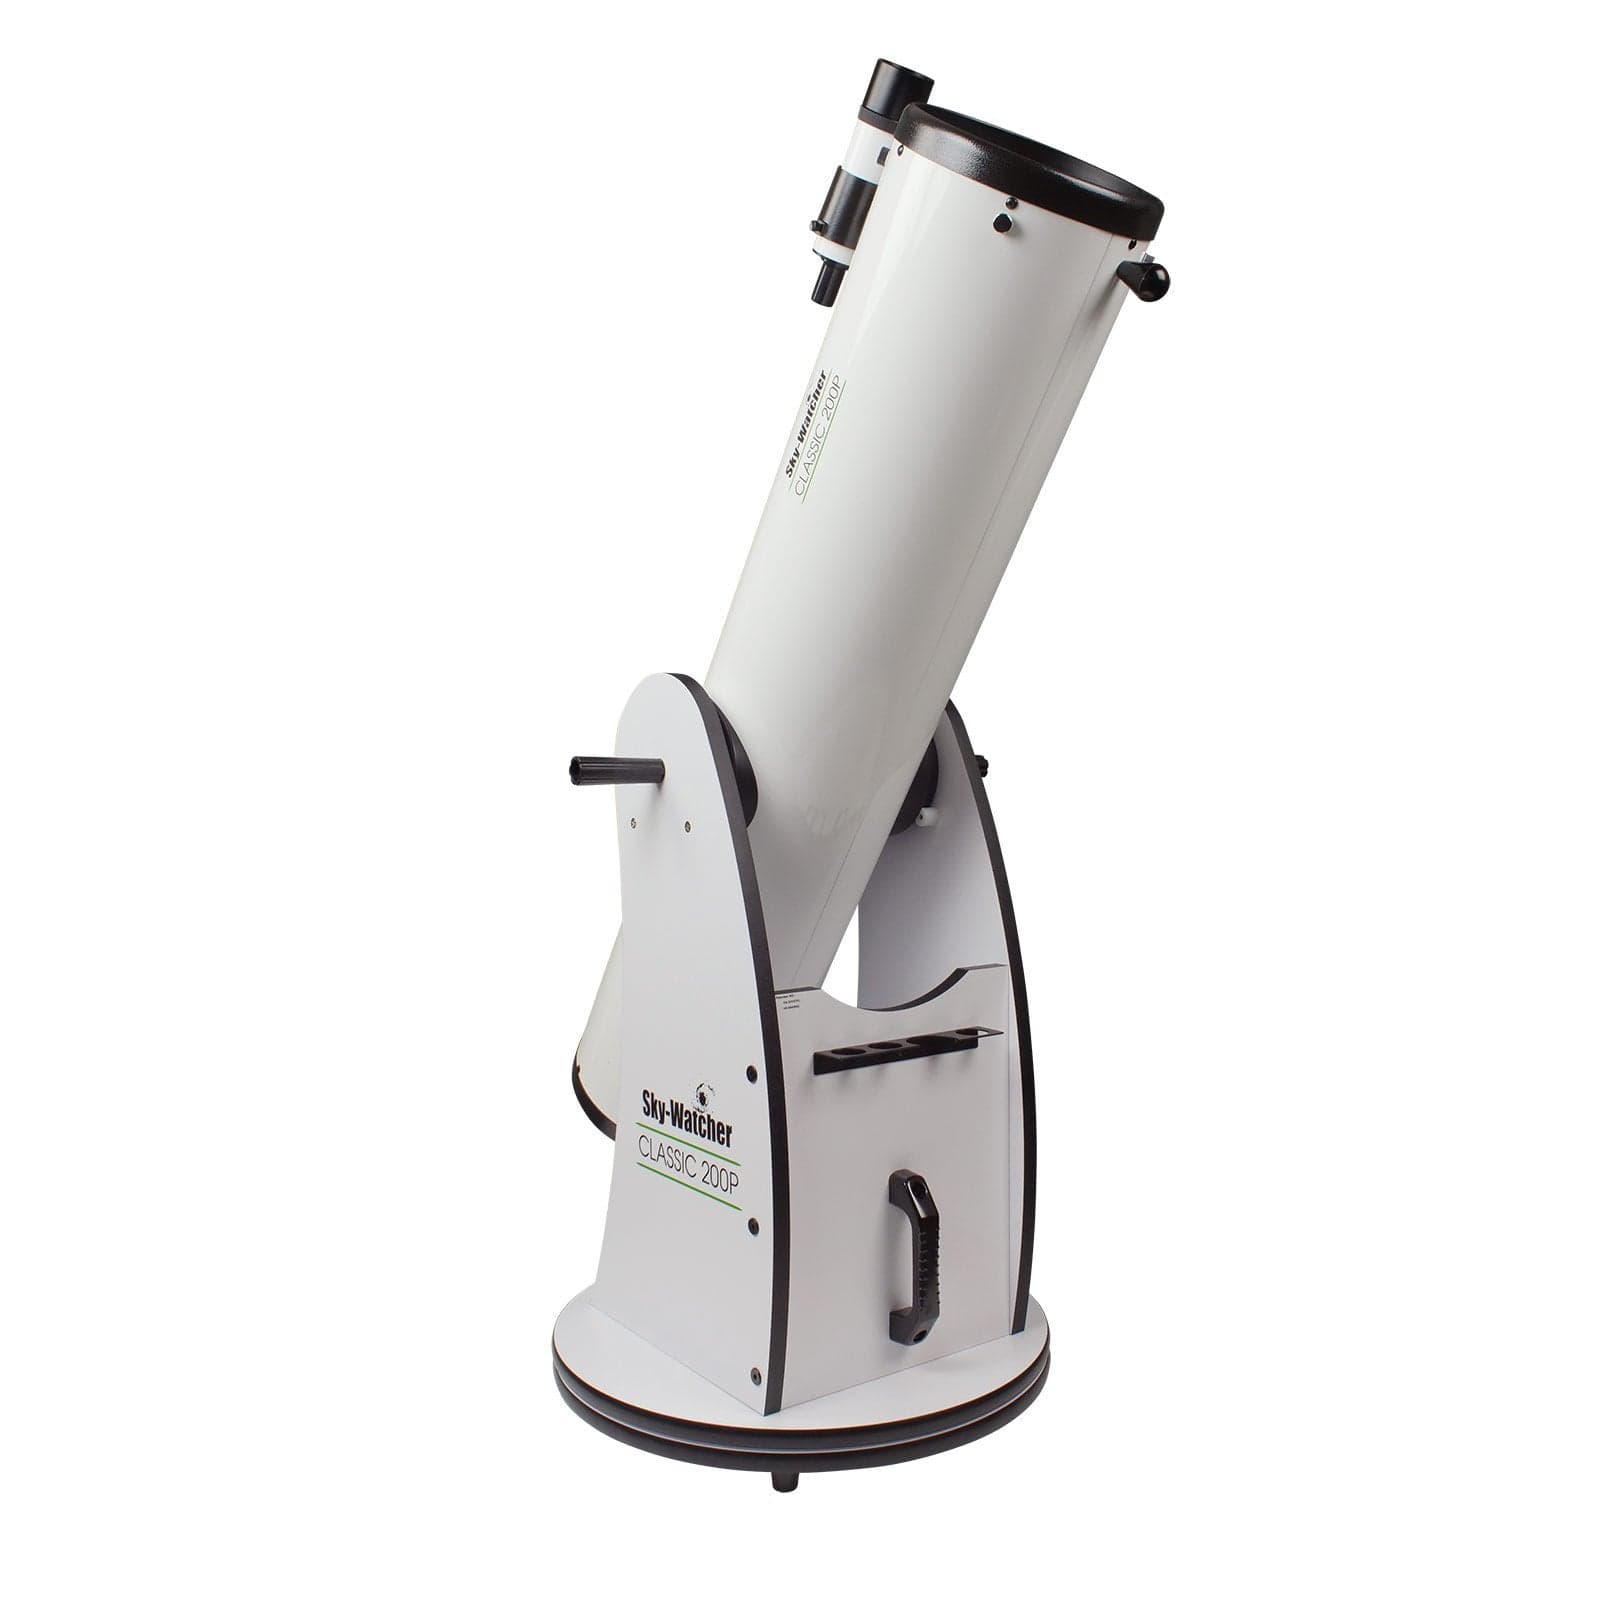 Sky-Watcher Telescope Sky-Watcher Classic 200P 8" Dobsonian - S11610